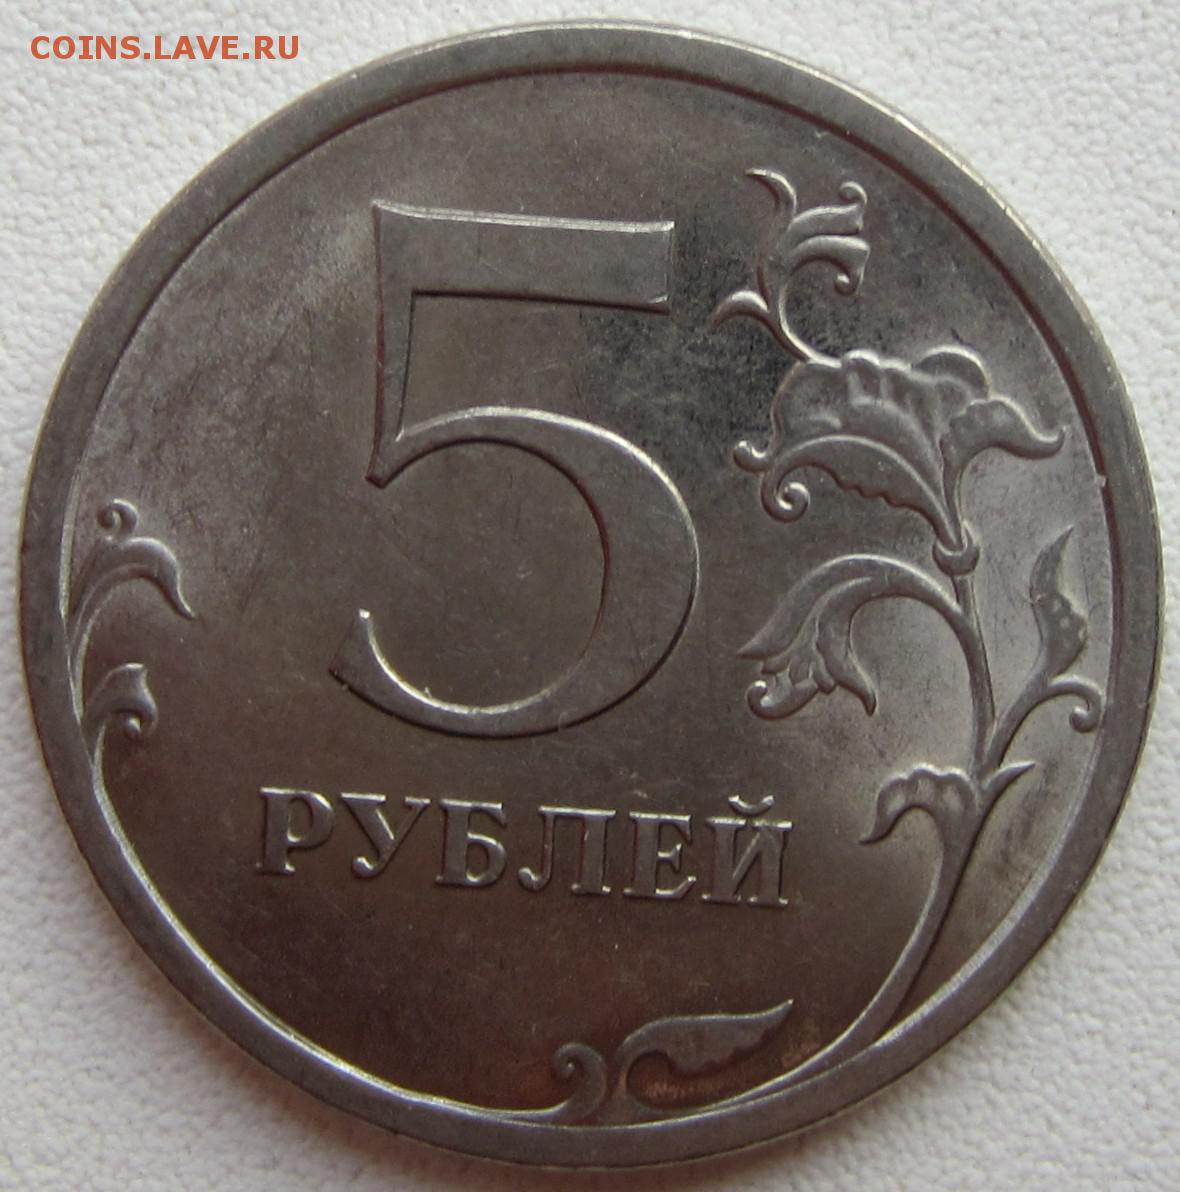 5 рублей 78. 5 Рублей 2018. Монеты из магнита.